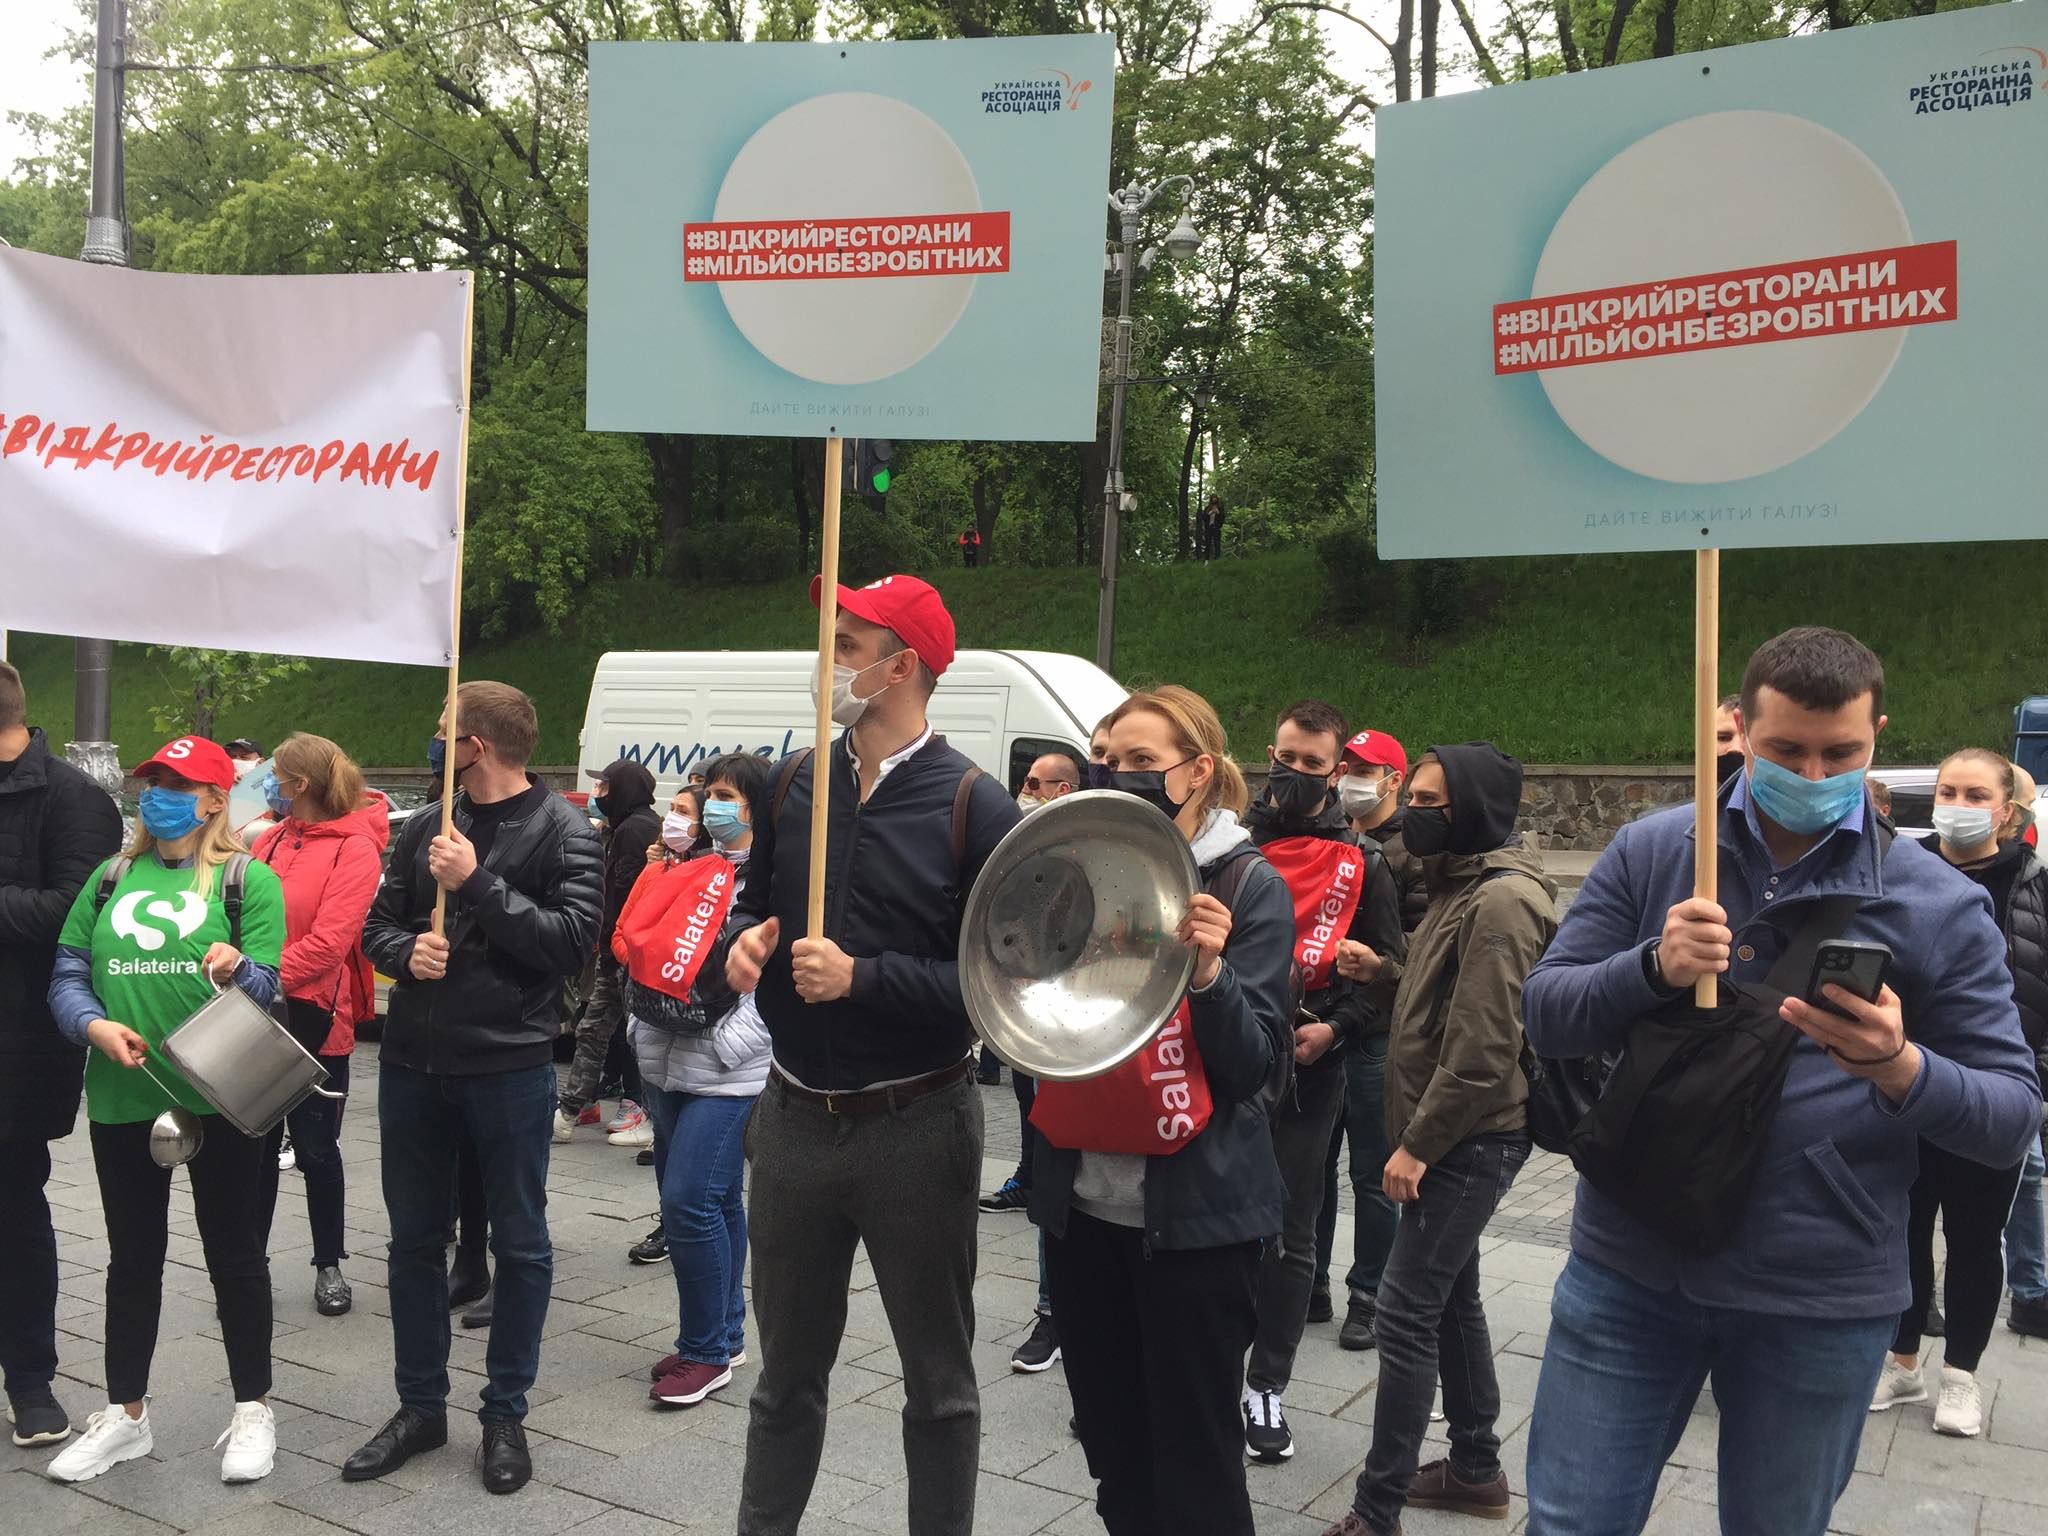 "Уже миллион безработных": под Кабмином протестуют рестораторы – фото, видео